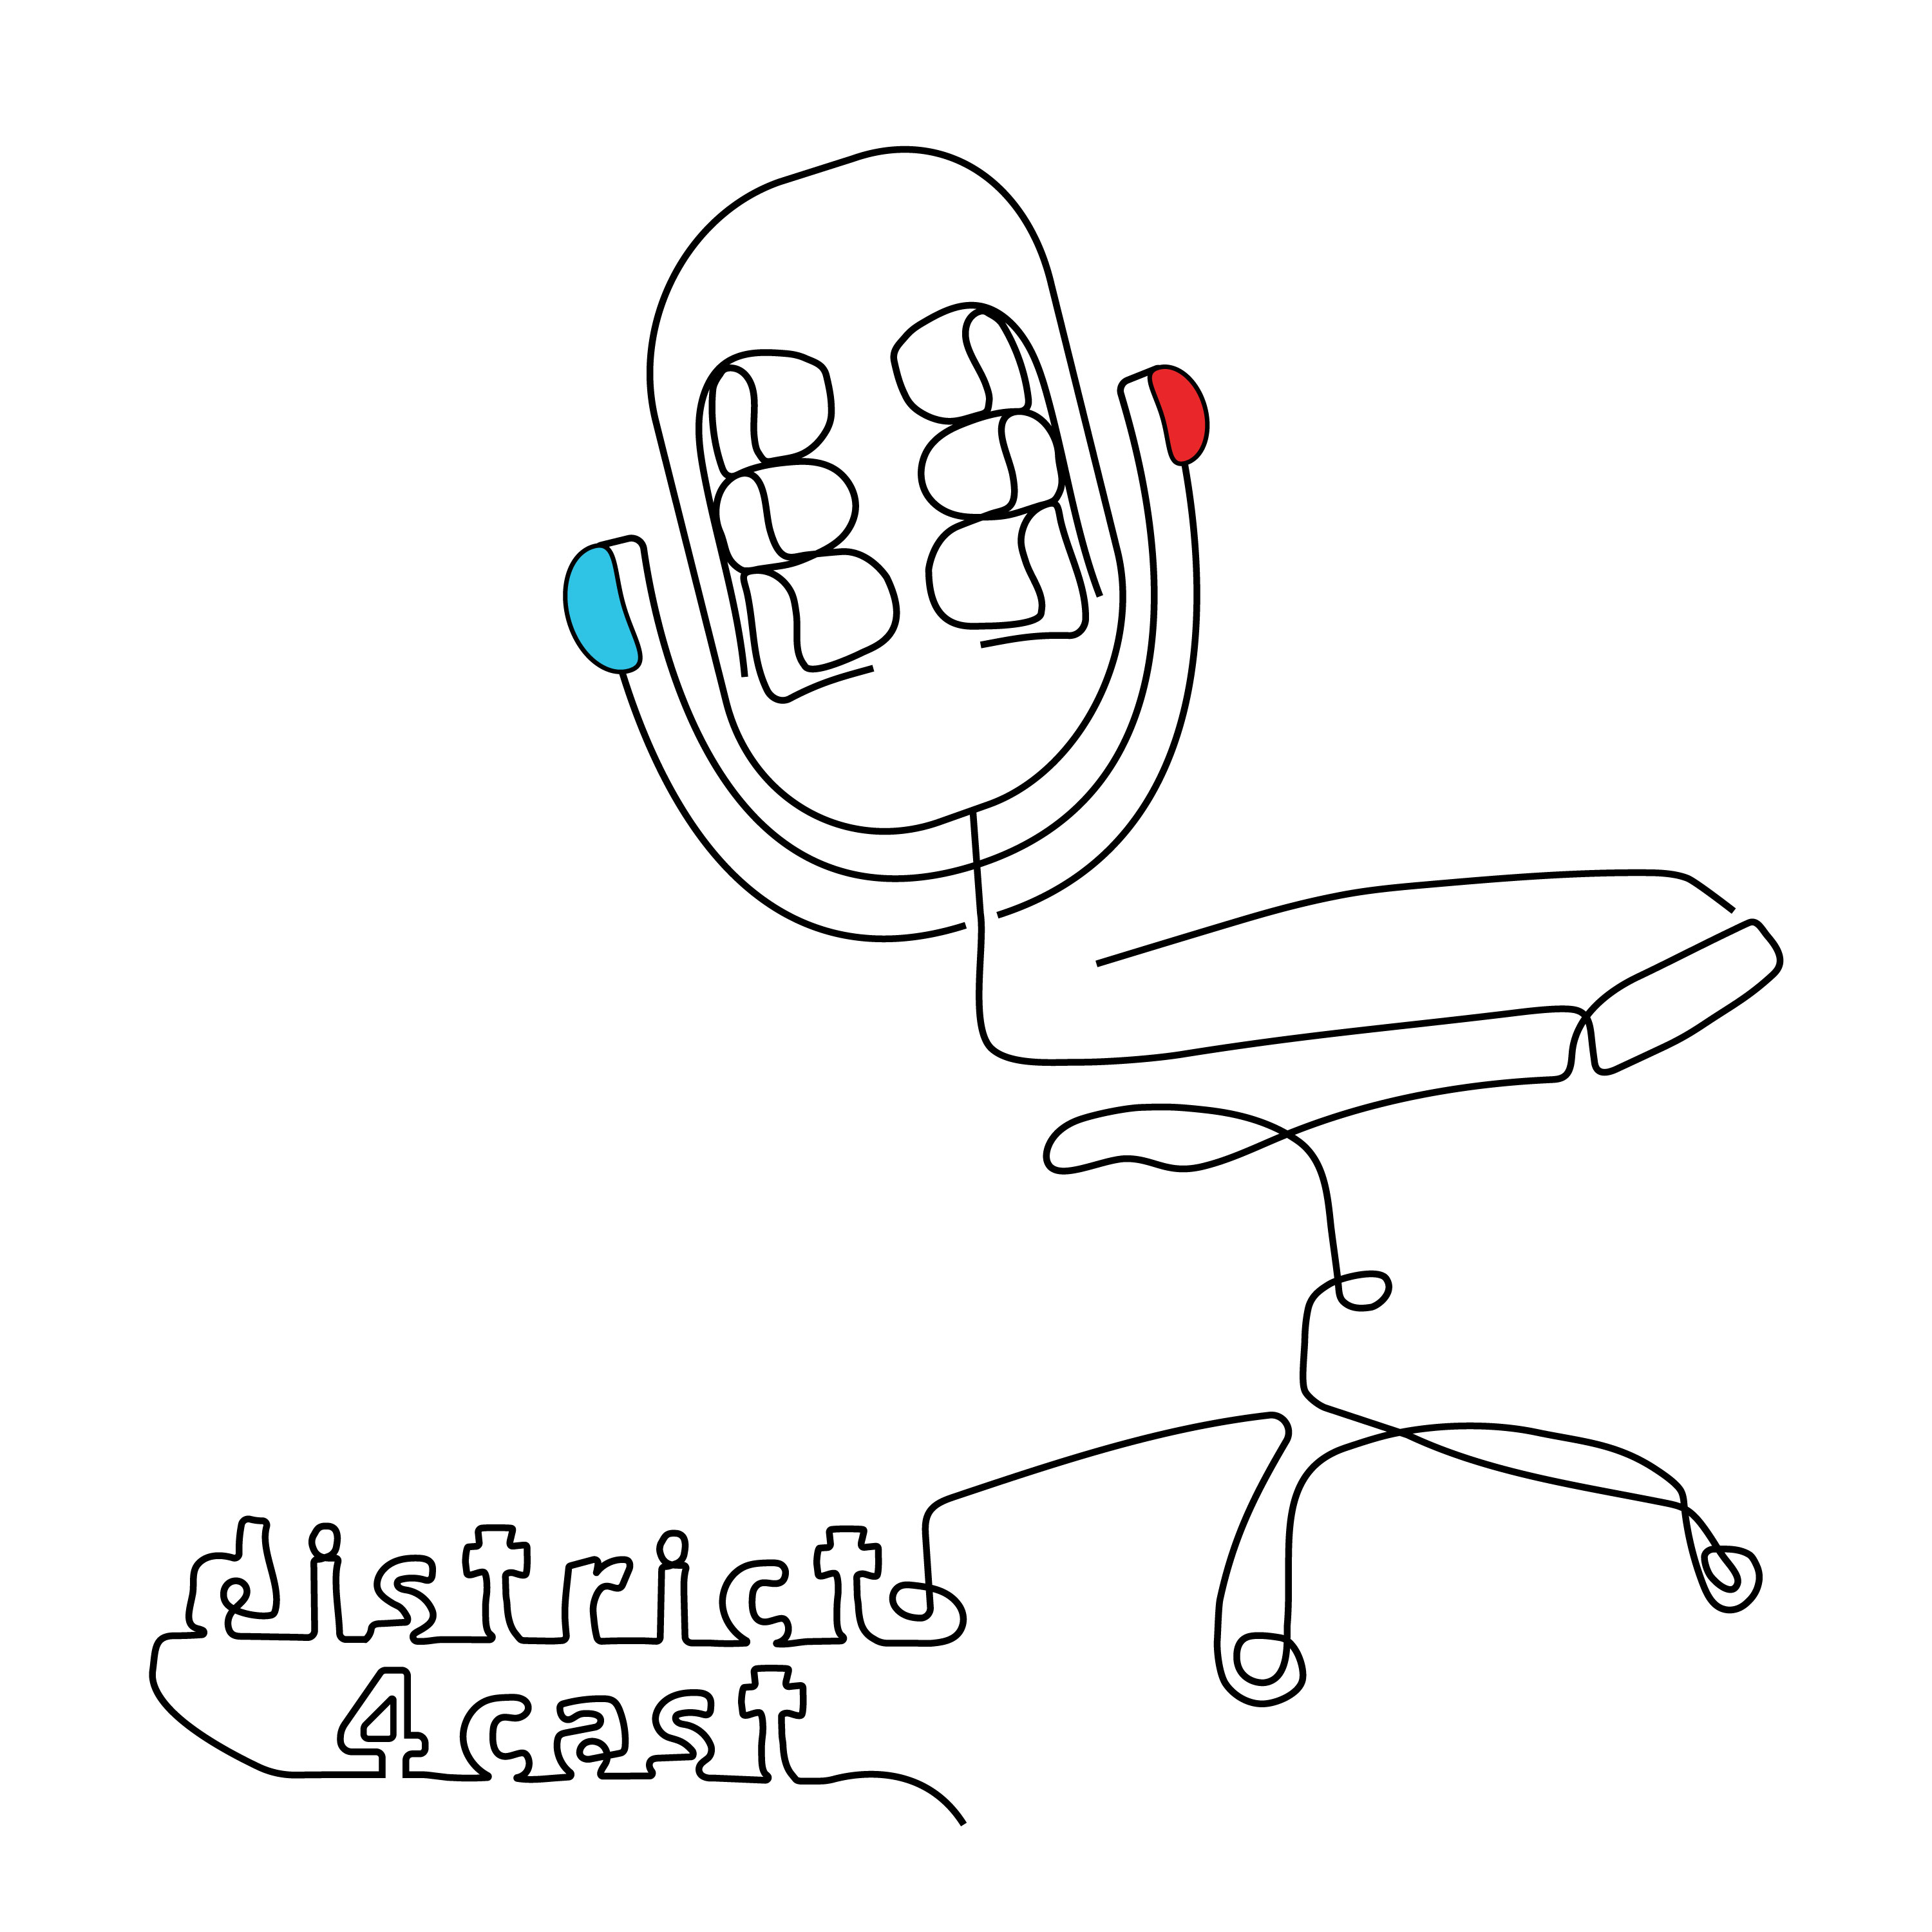 Artwork for AAF District 4Cast